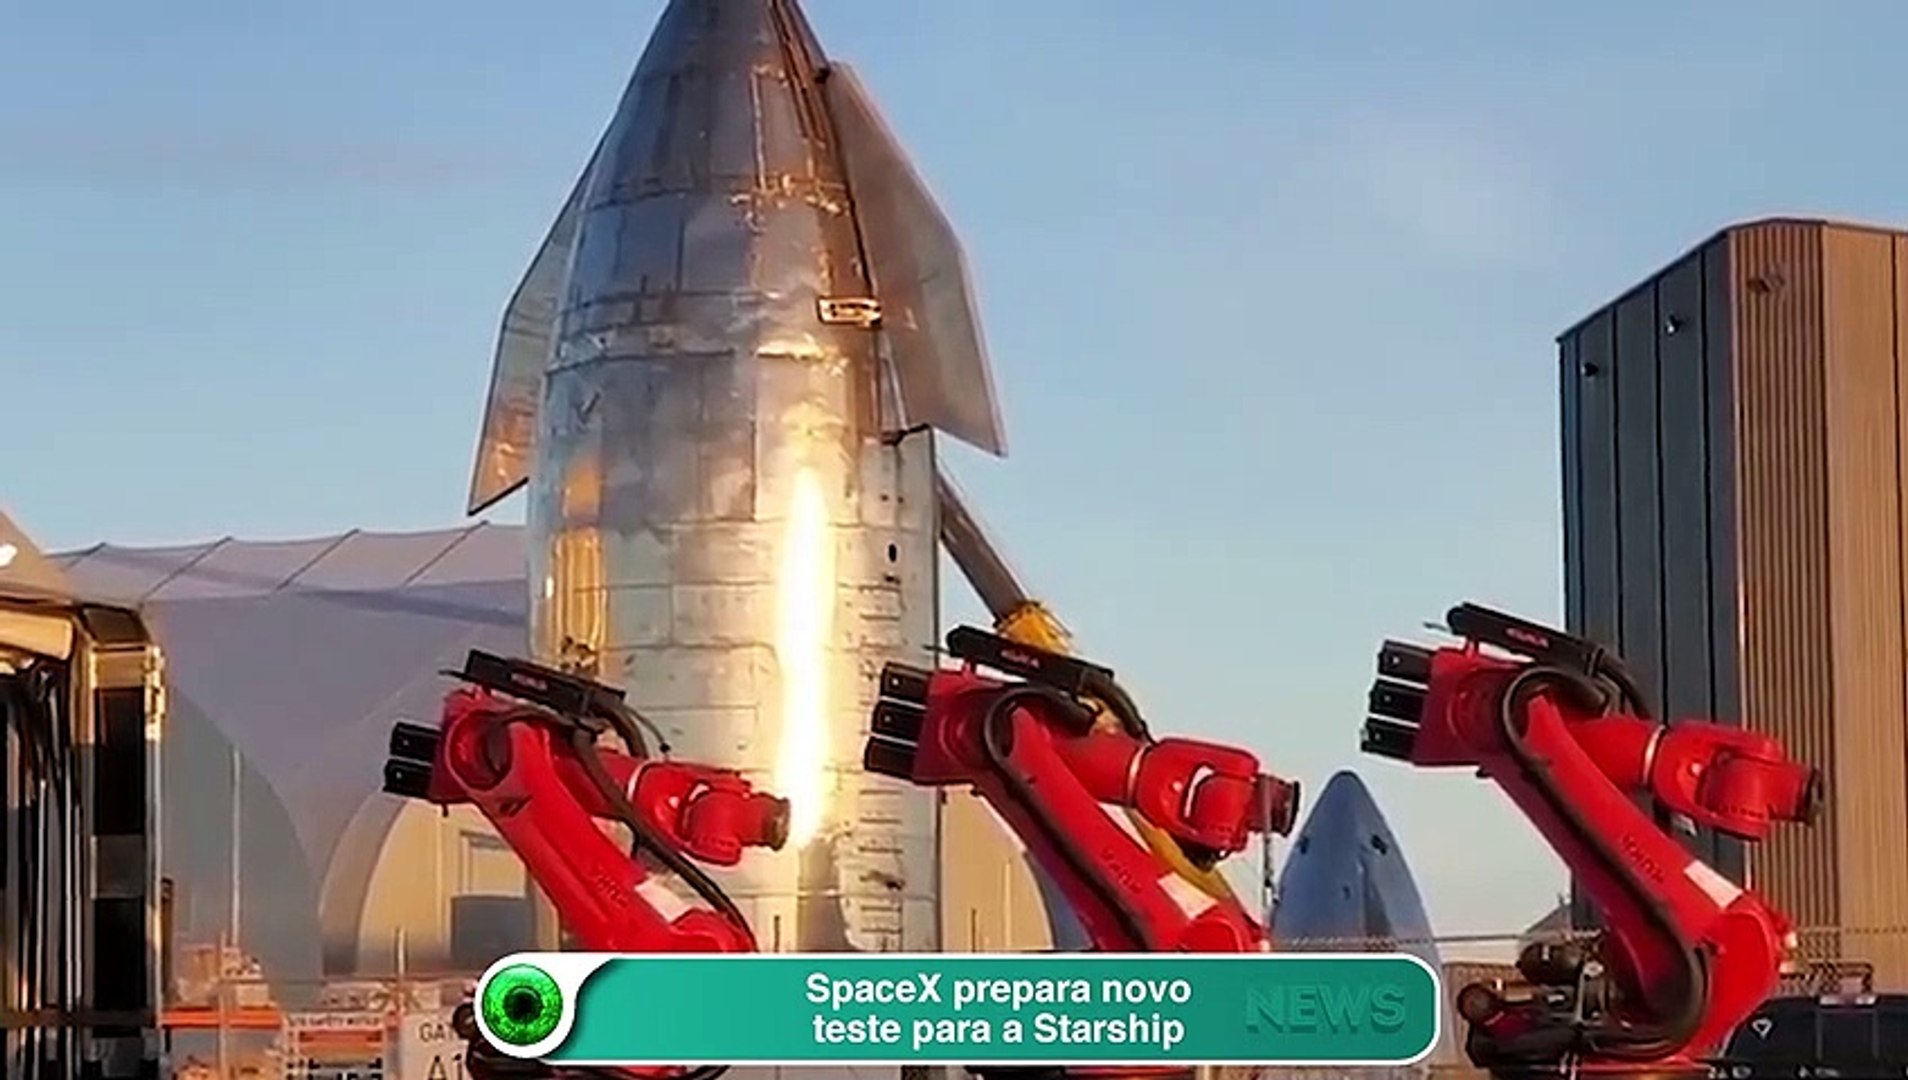 SpaceX prepara novo teste para a Starship